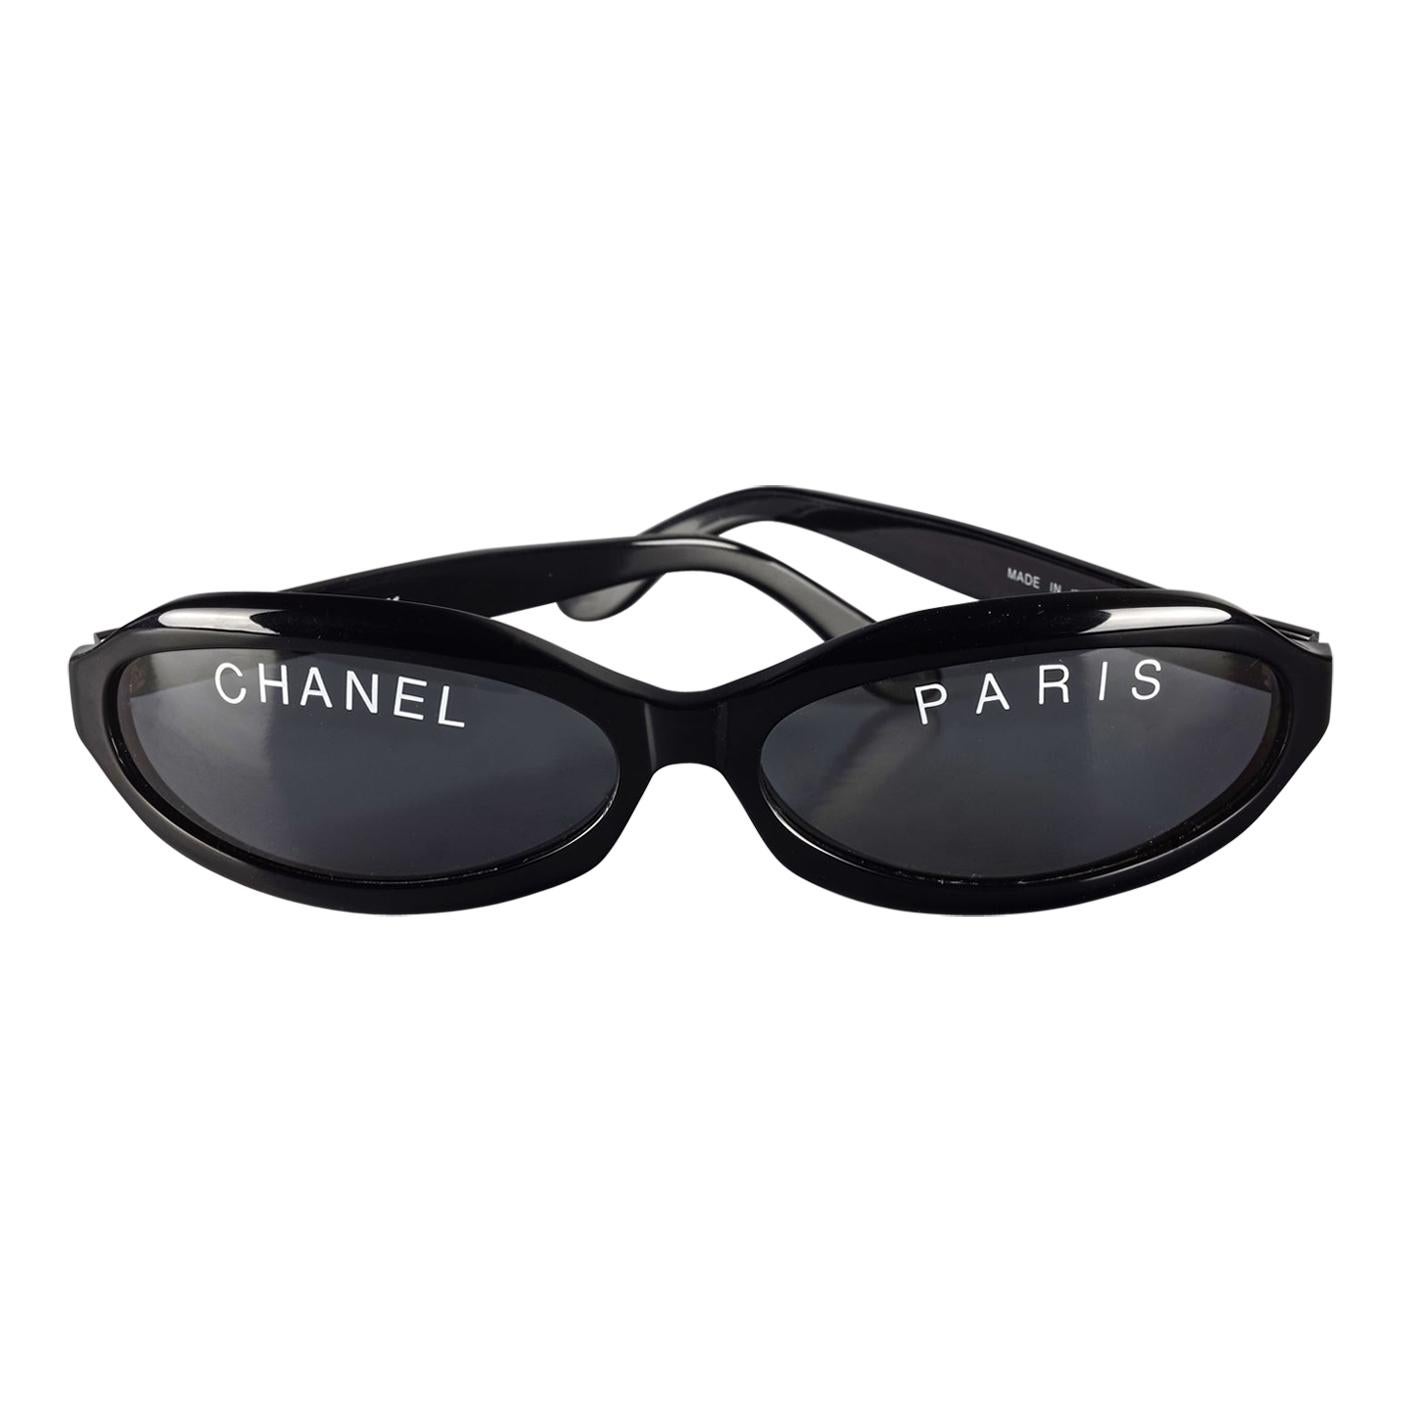 chanel sunglasses cost